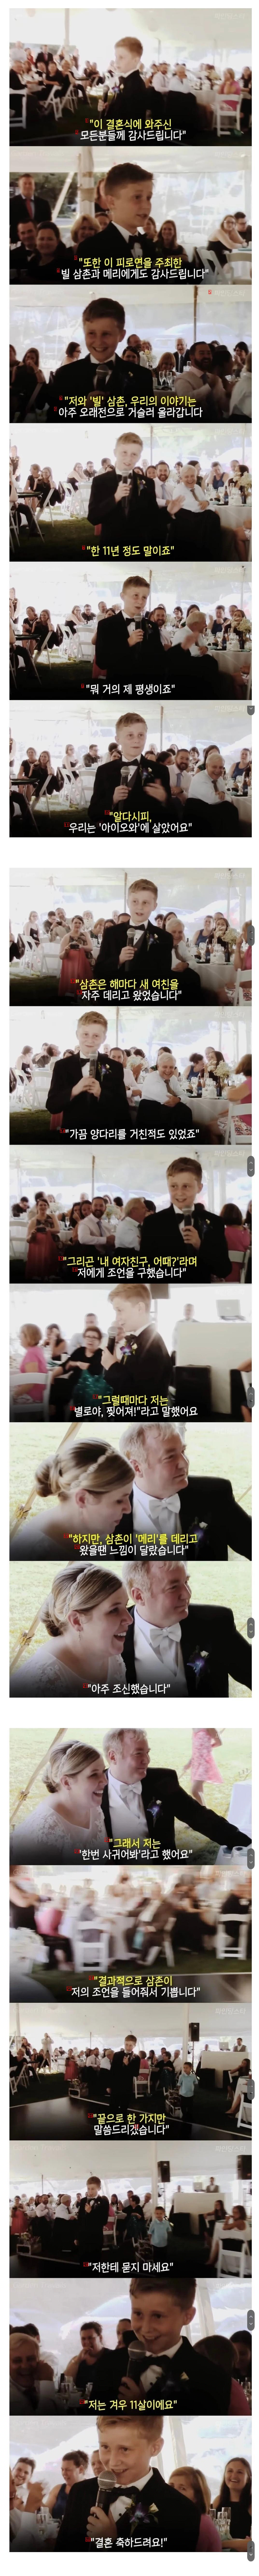 11歳の甥に結婚式のお祝い演説を任せれば、